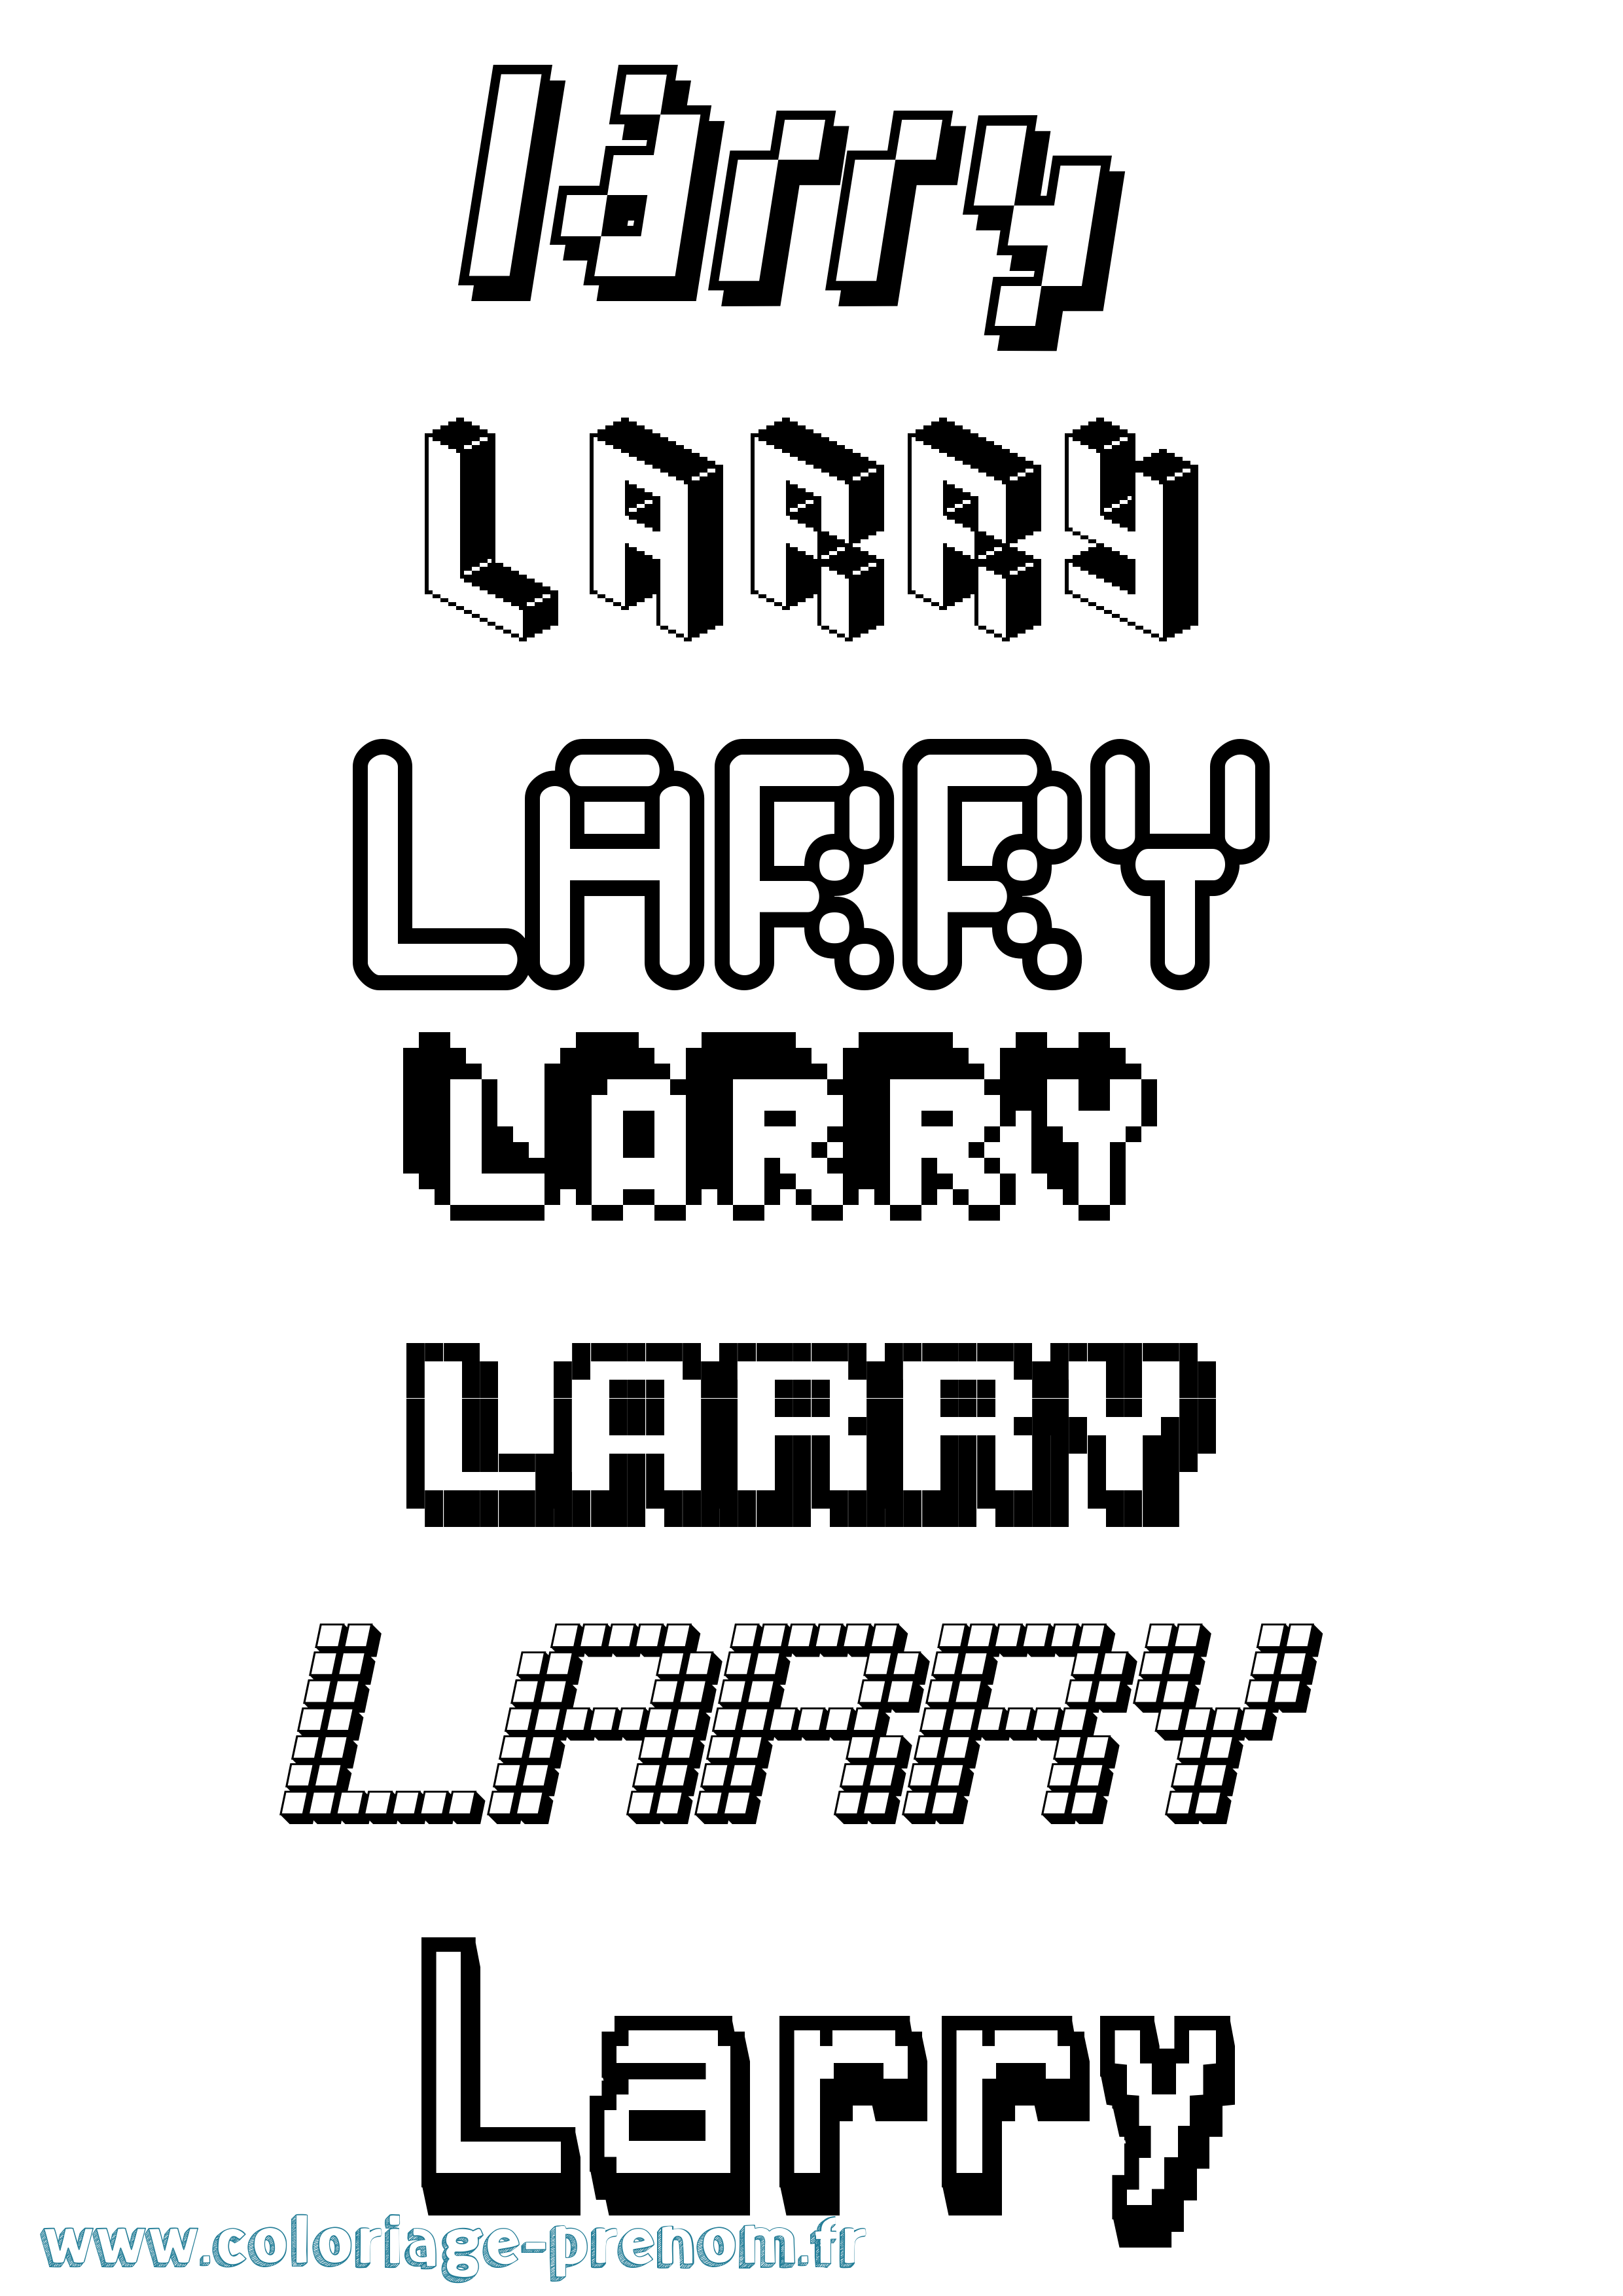 Coloriage prénom Larry Pixel